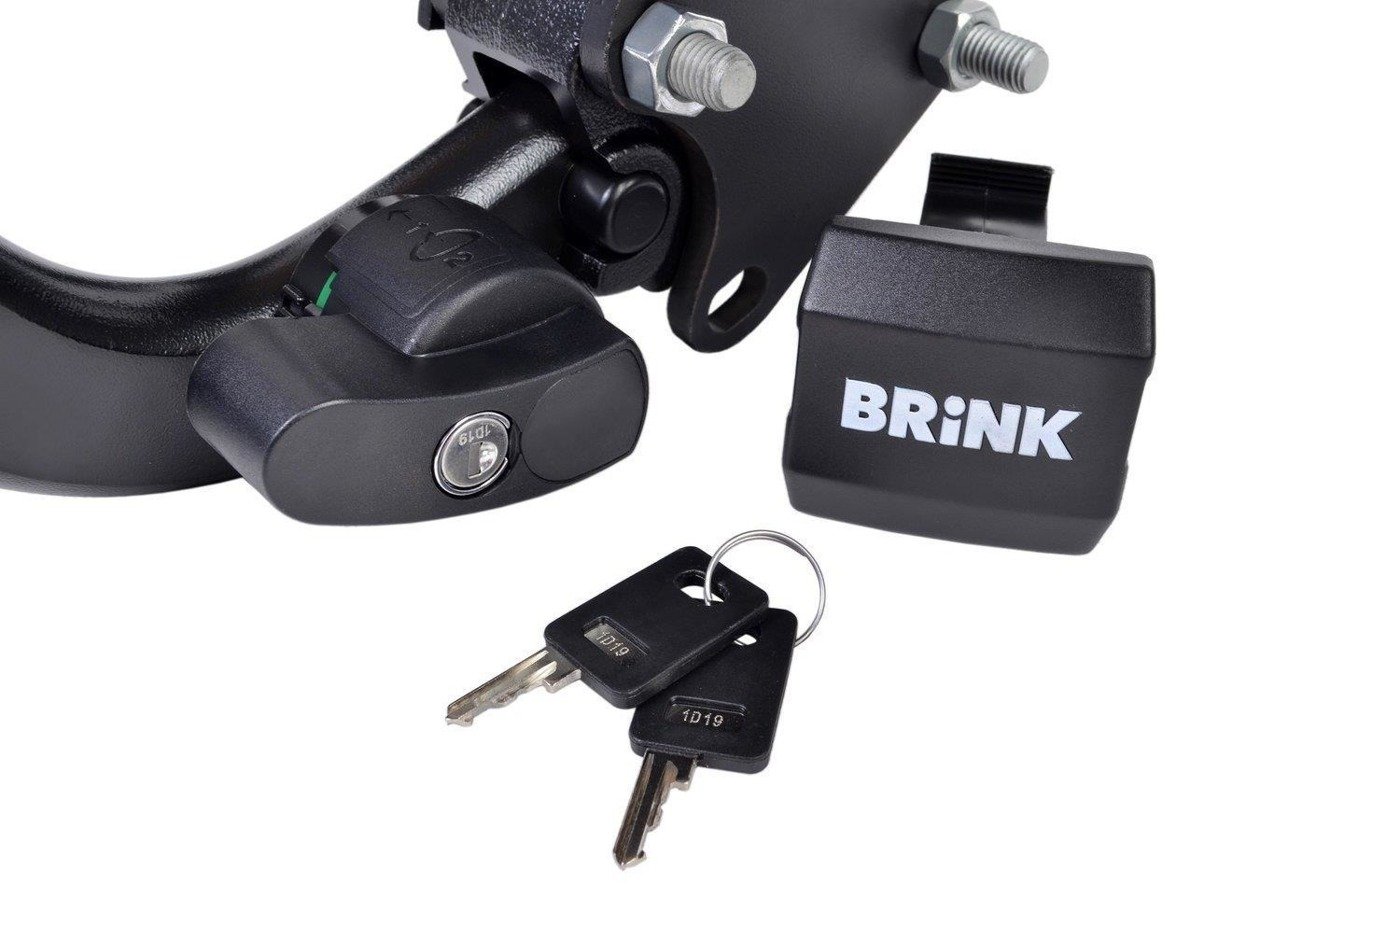 Hak holowniczy Brink Mini MINI (R56) 2006-2013